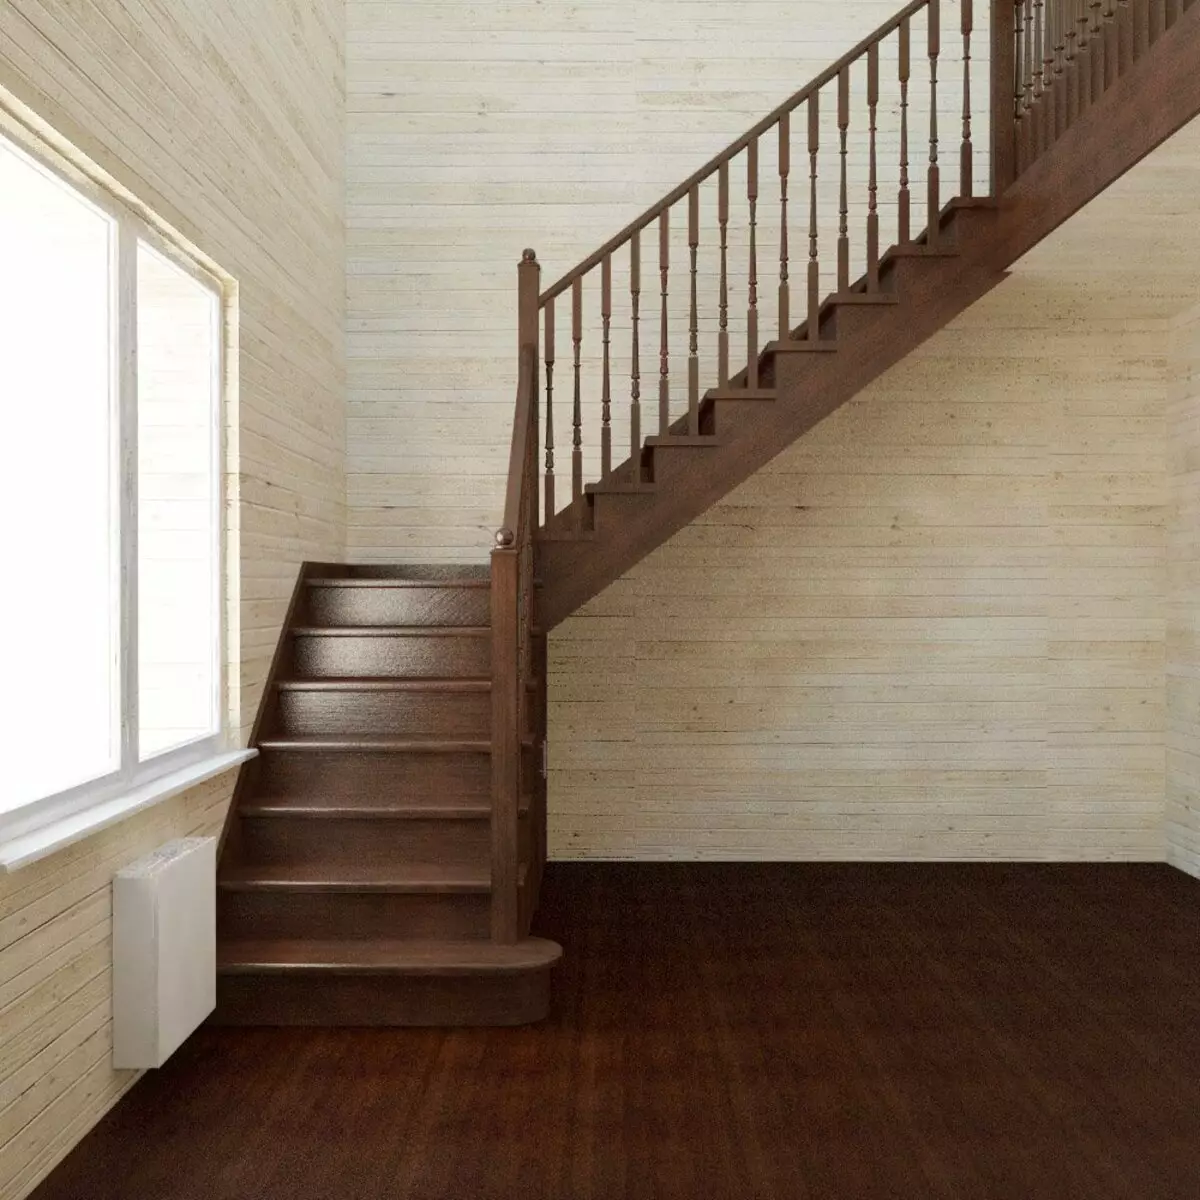 Найти лестницу на второй этаж. Лестница п образная 1640 на 910. Лестница межэтажная двухмаршевая. Г образные лестницы. Г образная лестница.